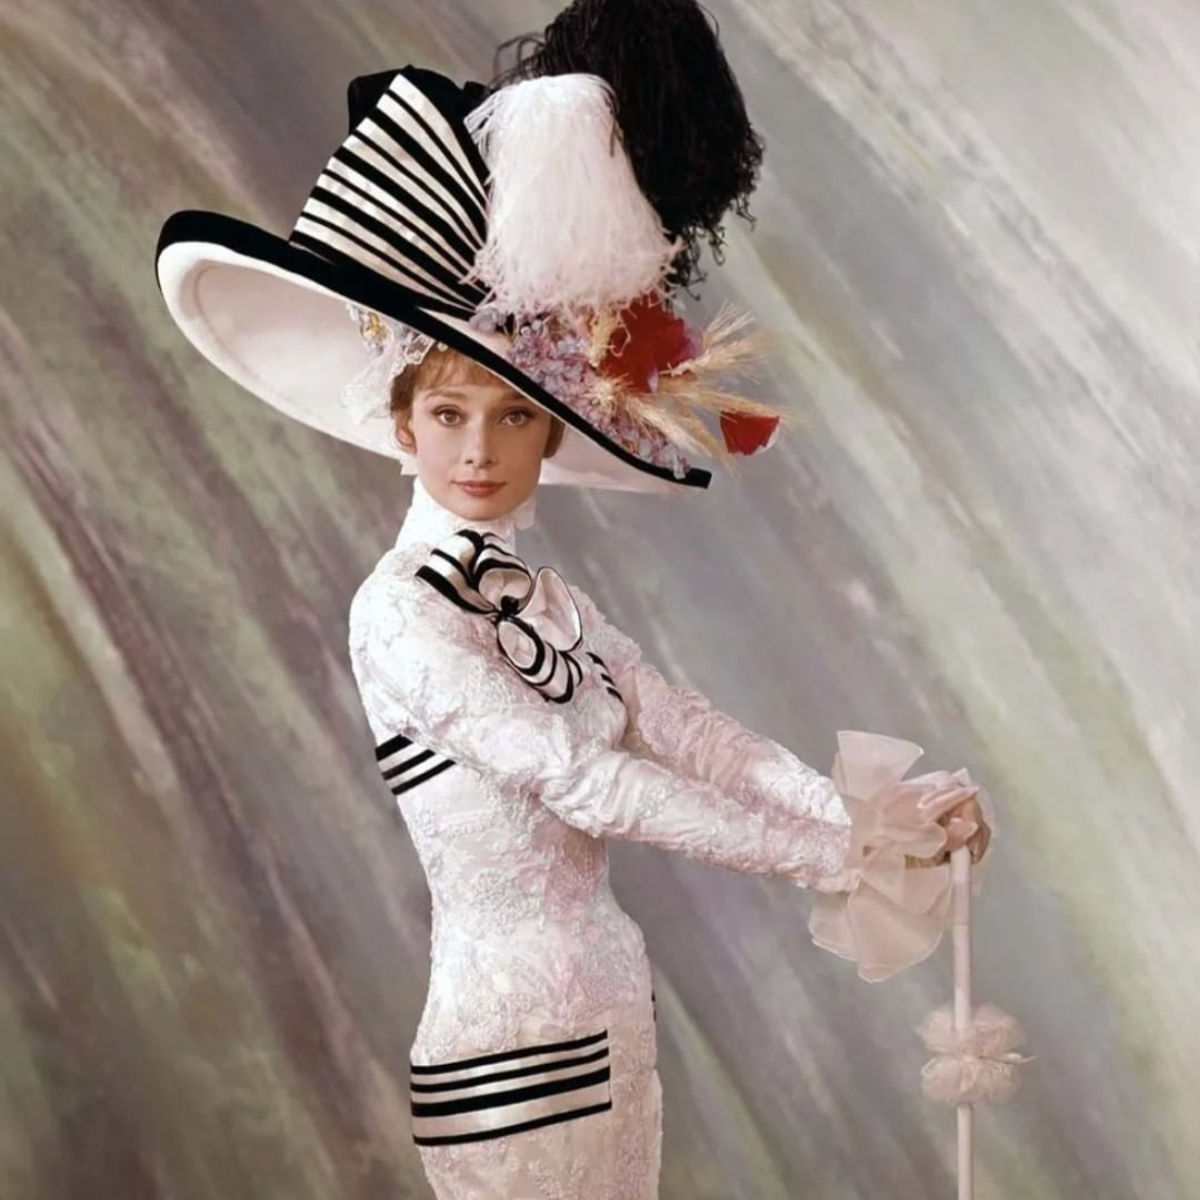 Audrey Hepburn dress auction